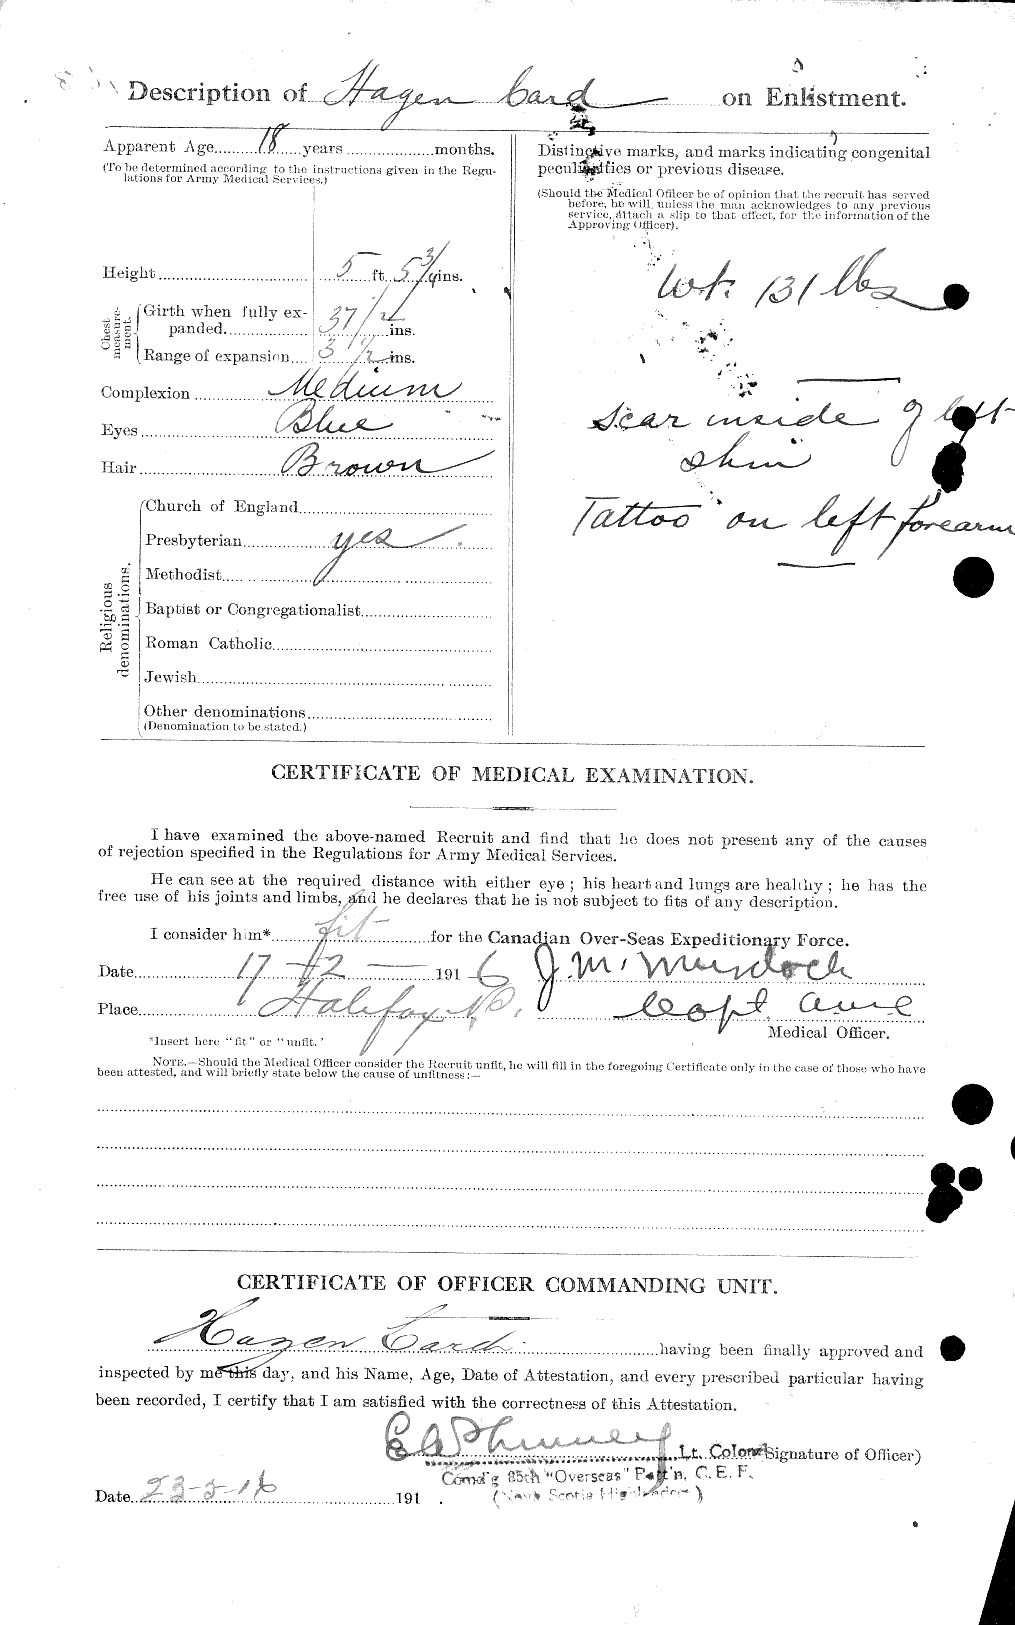 Dossiers du Personnel de la Première Guerre mondiale - CEC 003087b